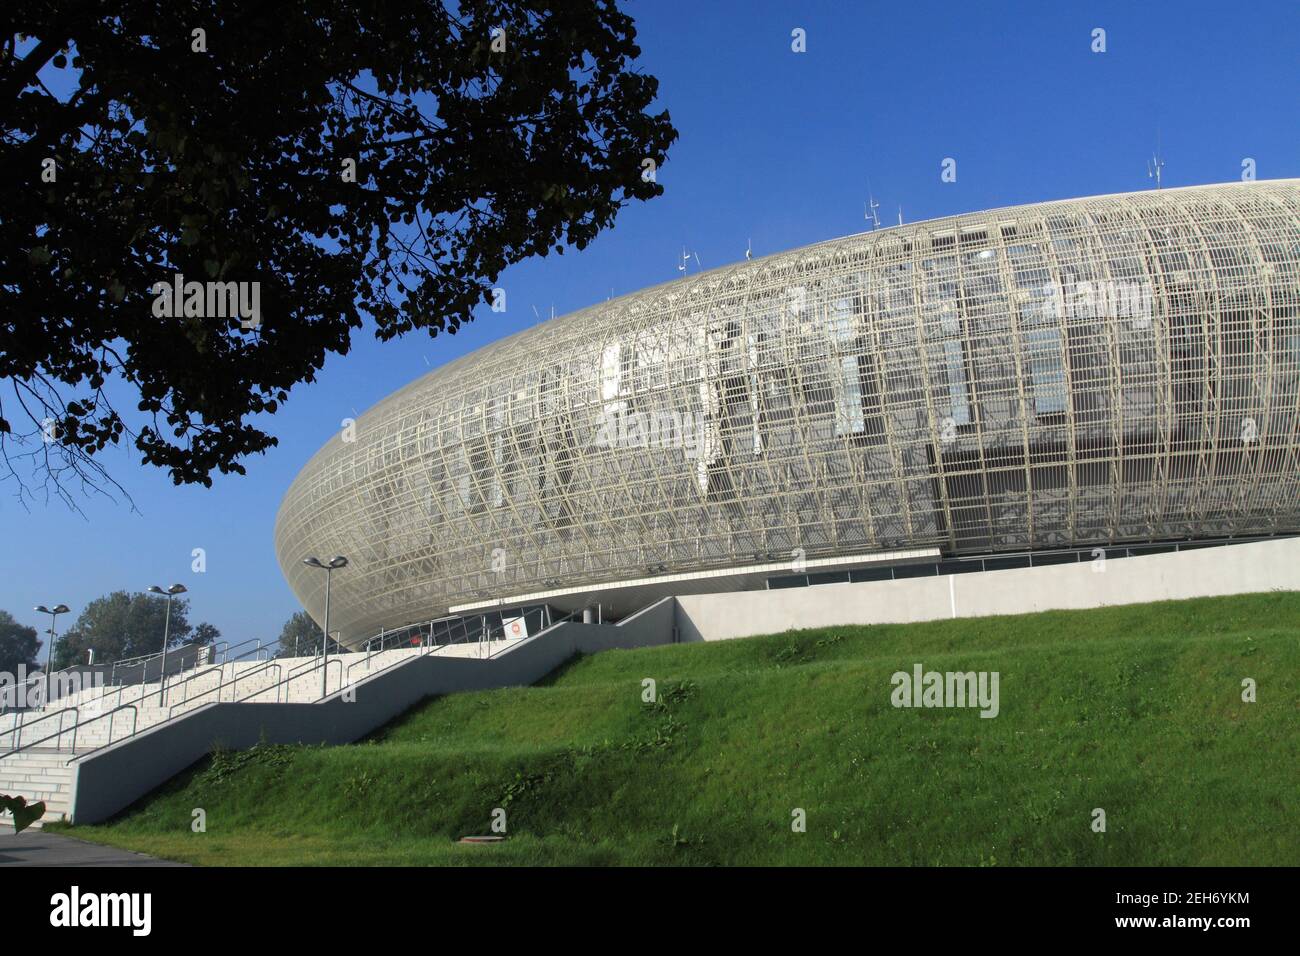 Cracovia. Cracovia. Polonia. Tauron Arena Krakow la più grande arena polivalente e sportiva al coperto in Polonia, capacità massima 25 000 persone. Foto Stock